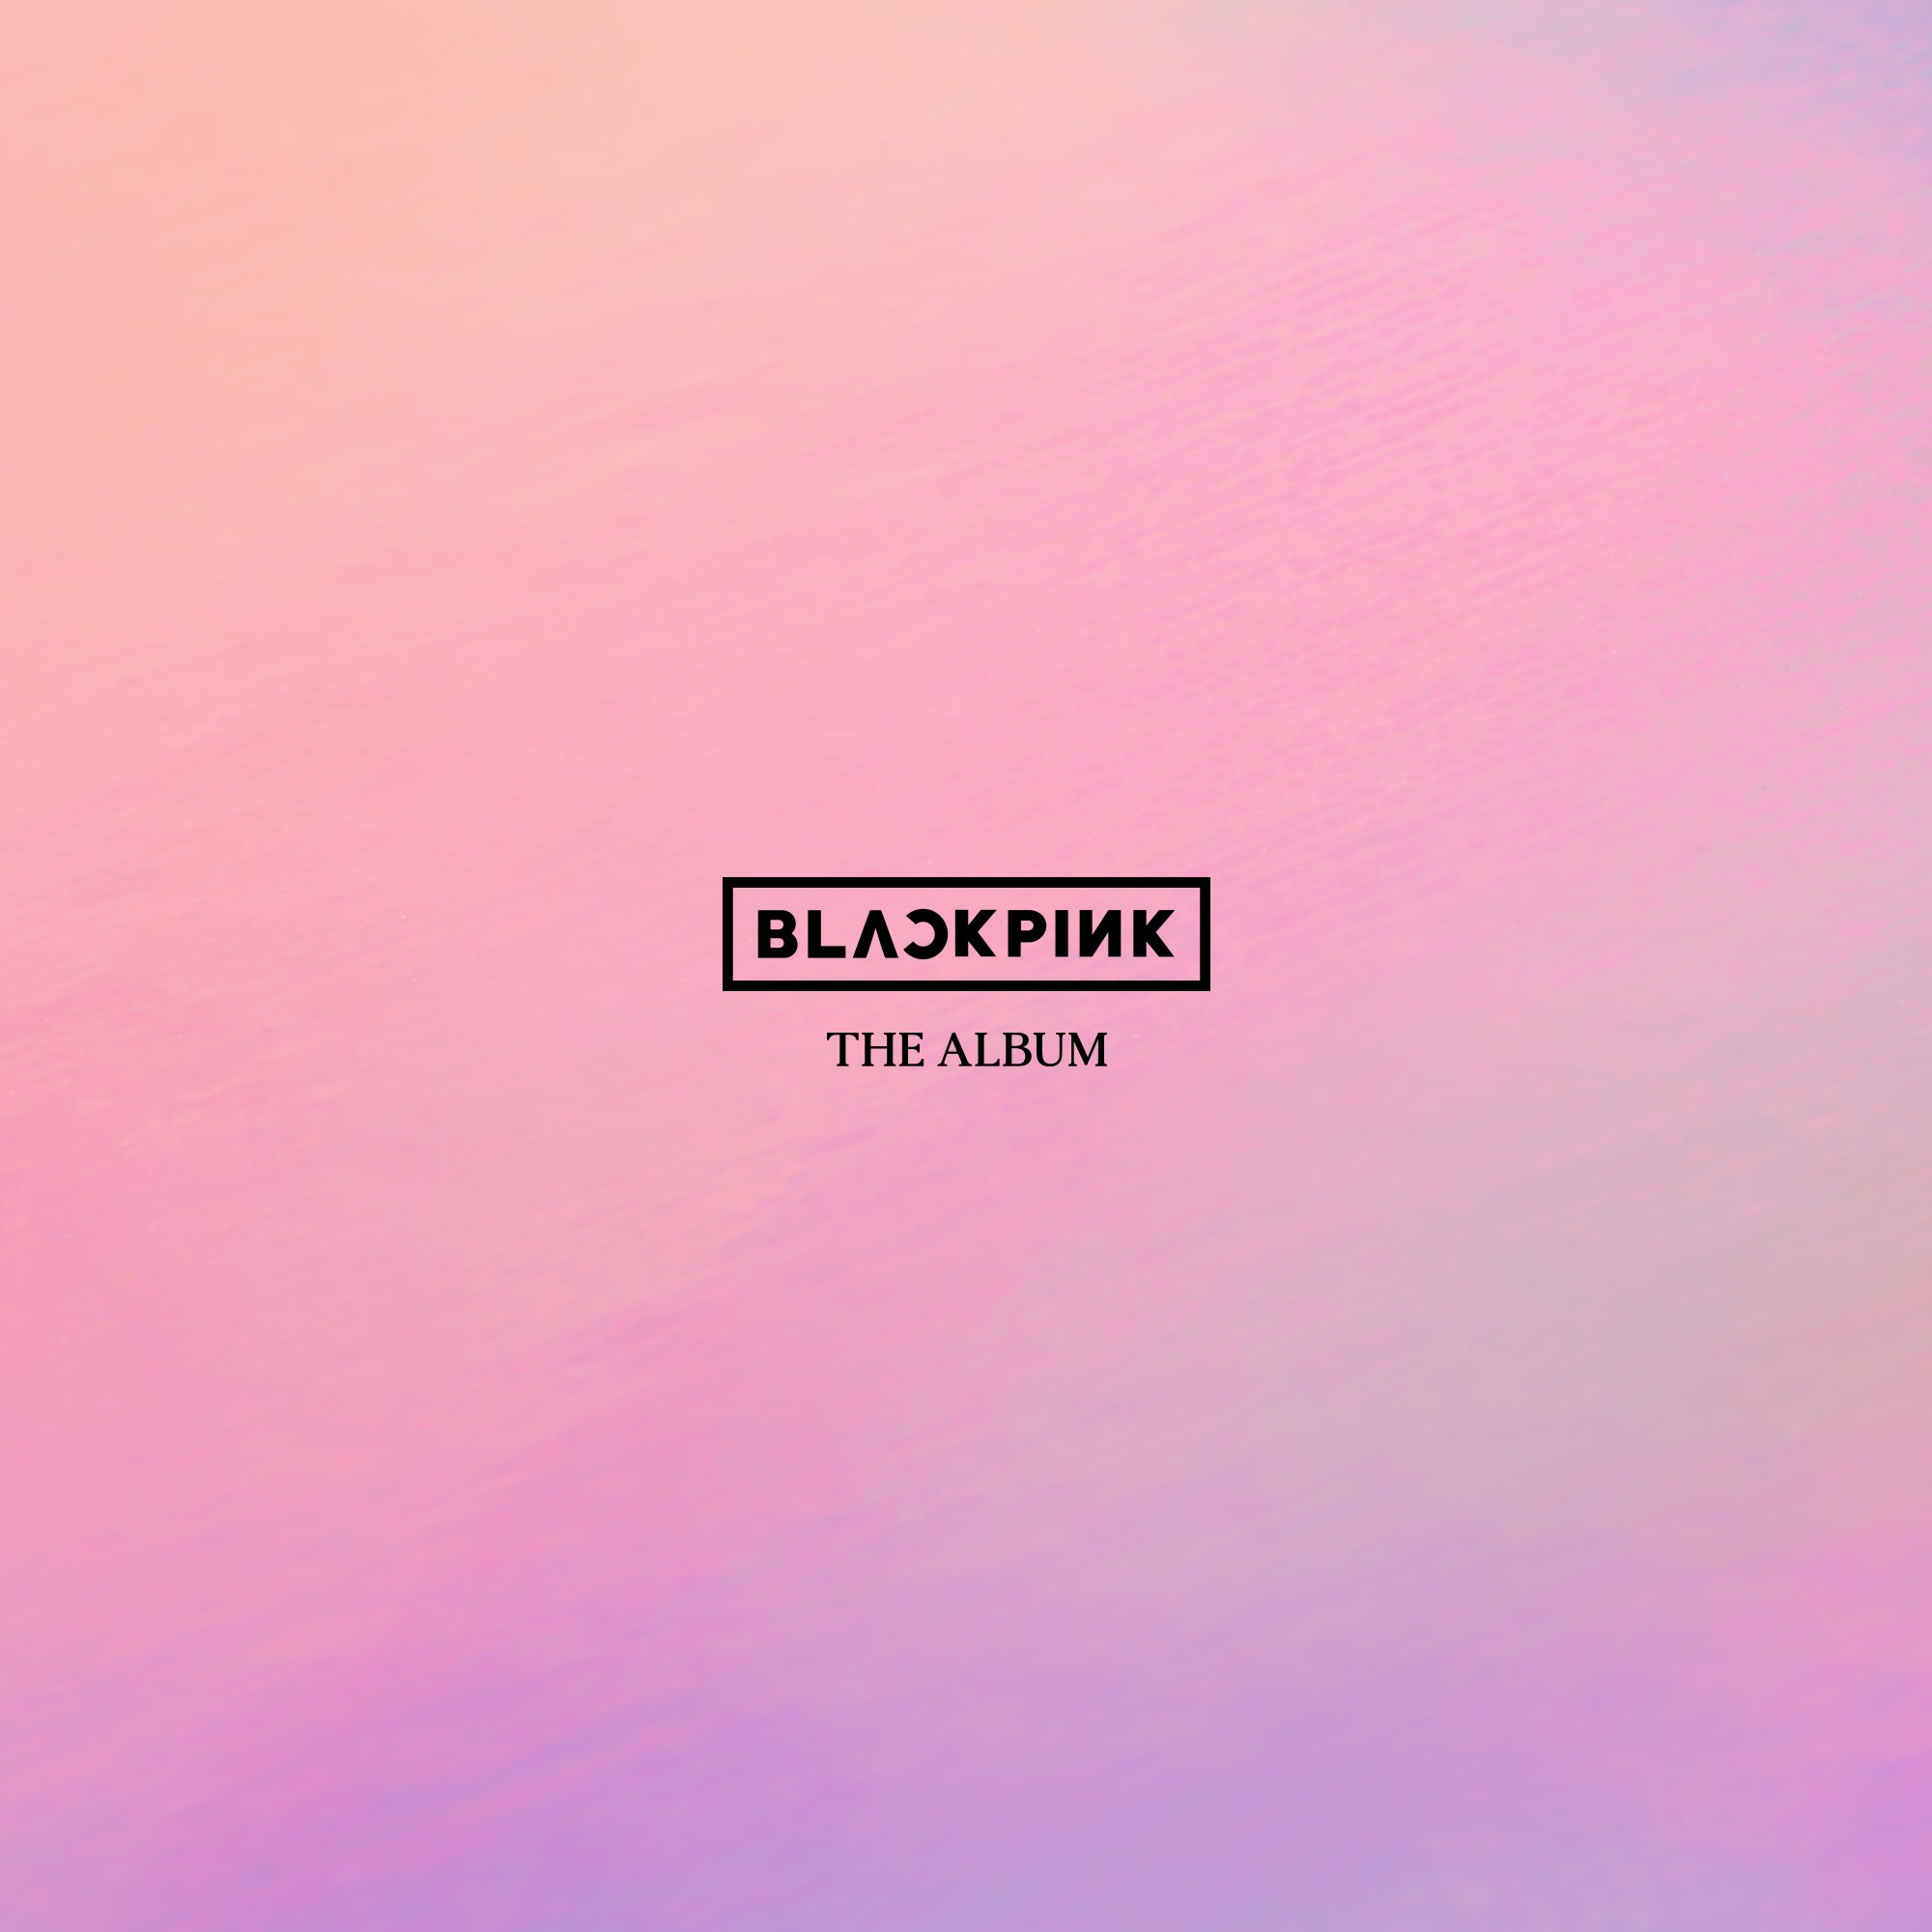 Kshopina - Blackpink - The Album - Saudi Arabia - Riyadh - Set 2